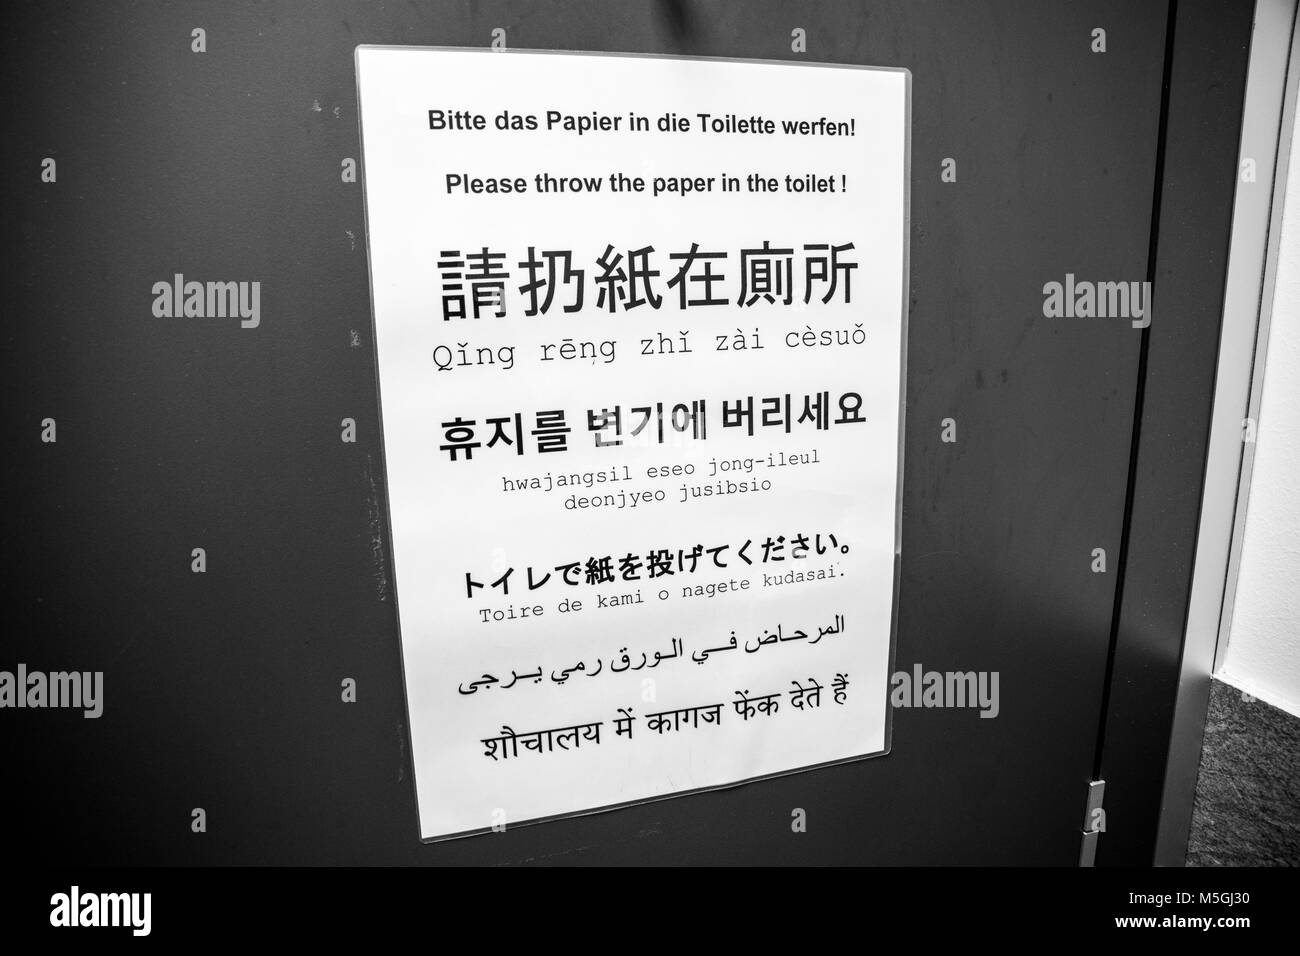 Inscrivez-vous à l'intérieur d'une salle de bains de dire aux gens de jeter le papier dans les toilettes. Rédigé en allemand, anglais, chinois, japonais, coréen, arabe et hindi Banque D'Images